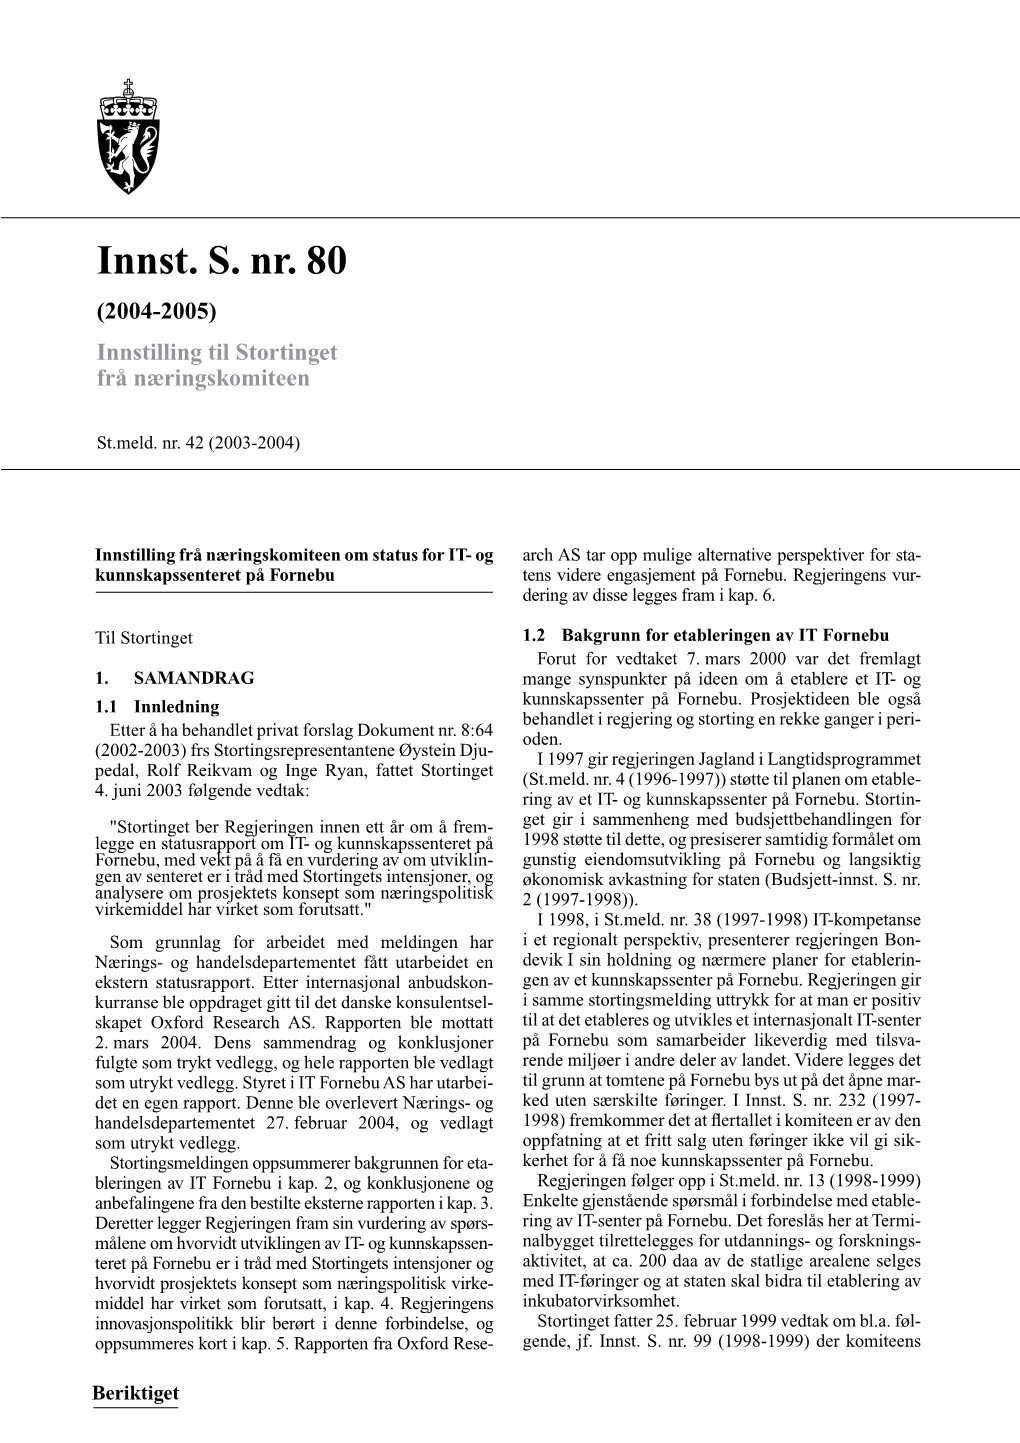 Innst. S. Nr. 80 (2004-2005) Innstilling Til Stortinget Frå Næringskomiteen